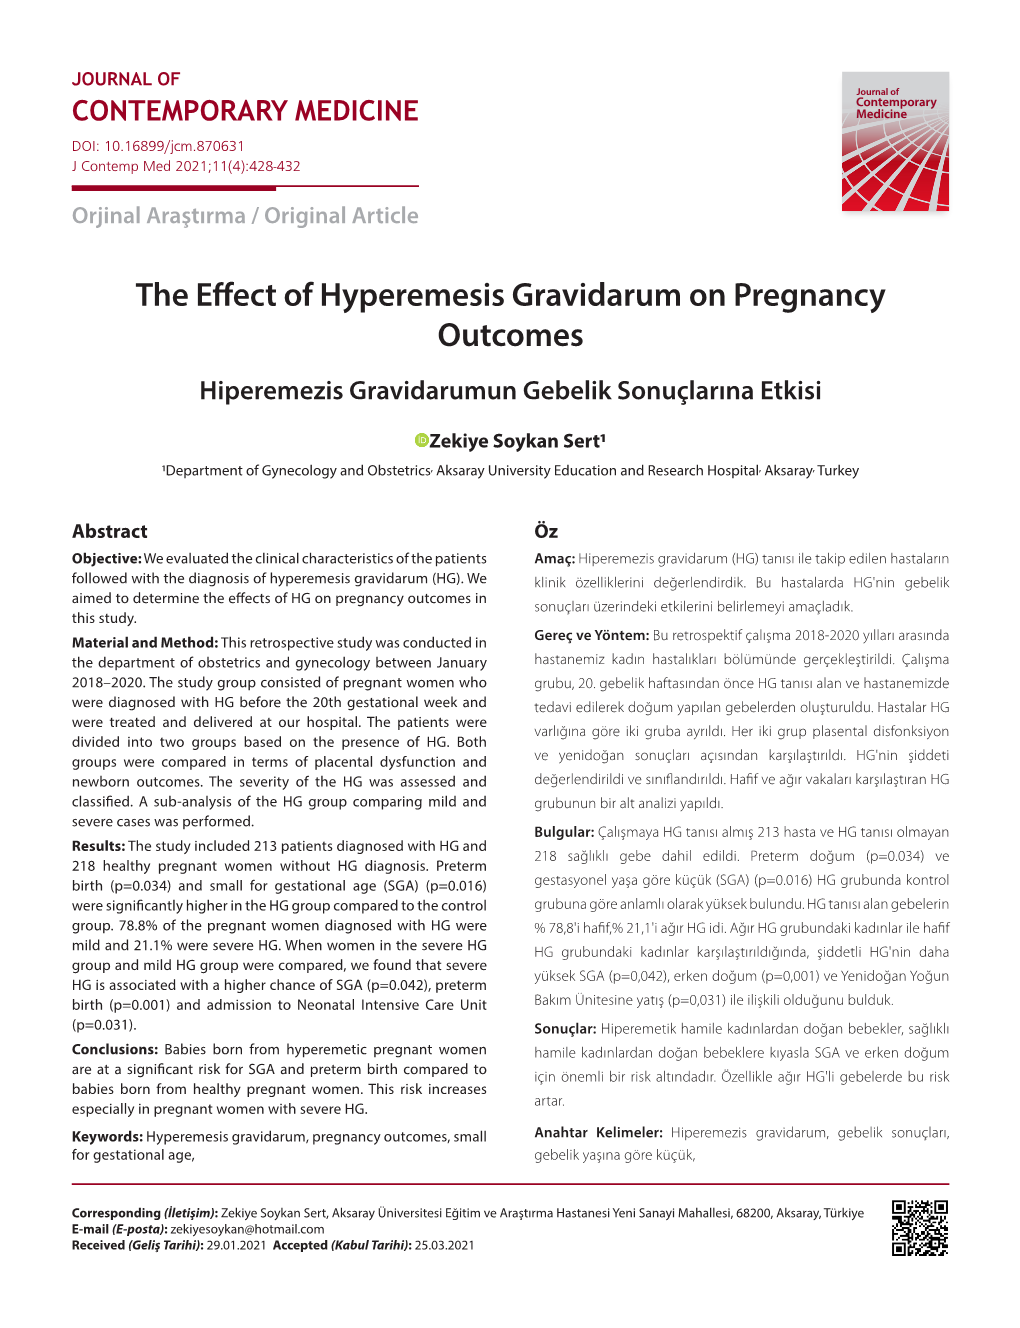 The Effect of Hyperemesis Gravidarum on Pregnancy Outcomes Hiperemezis Gravidarumun Gebelik Sonuçlarına Etkisi